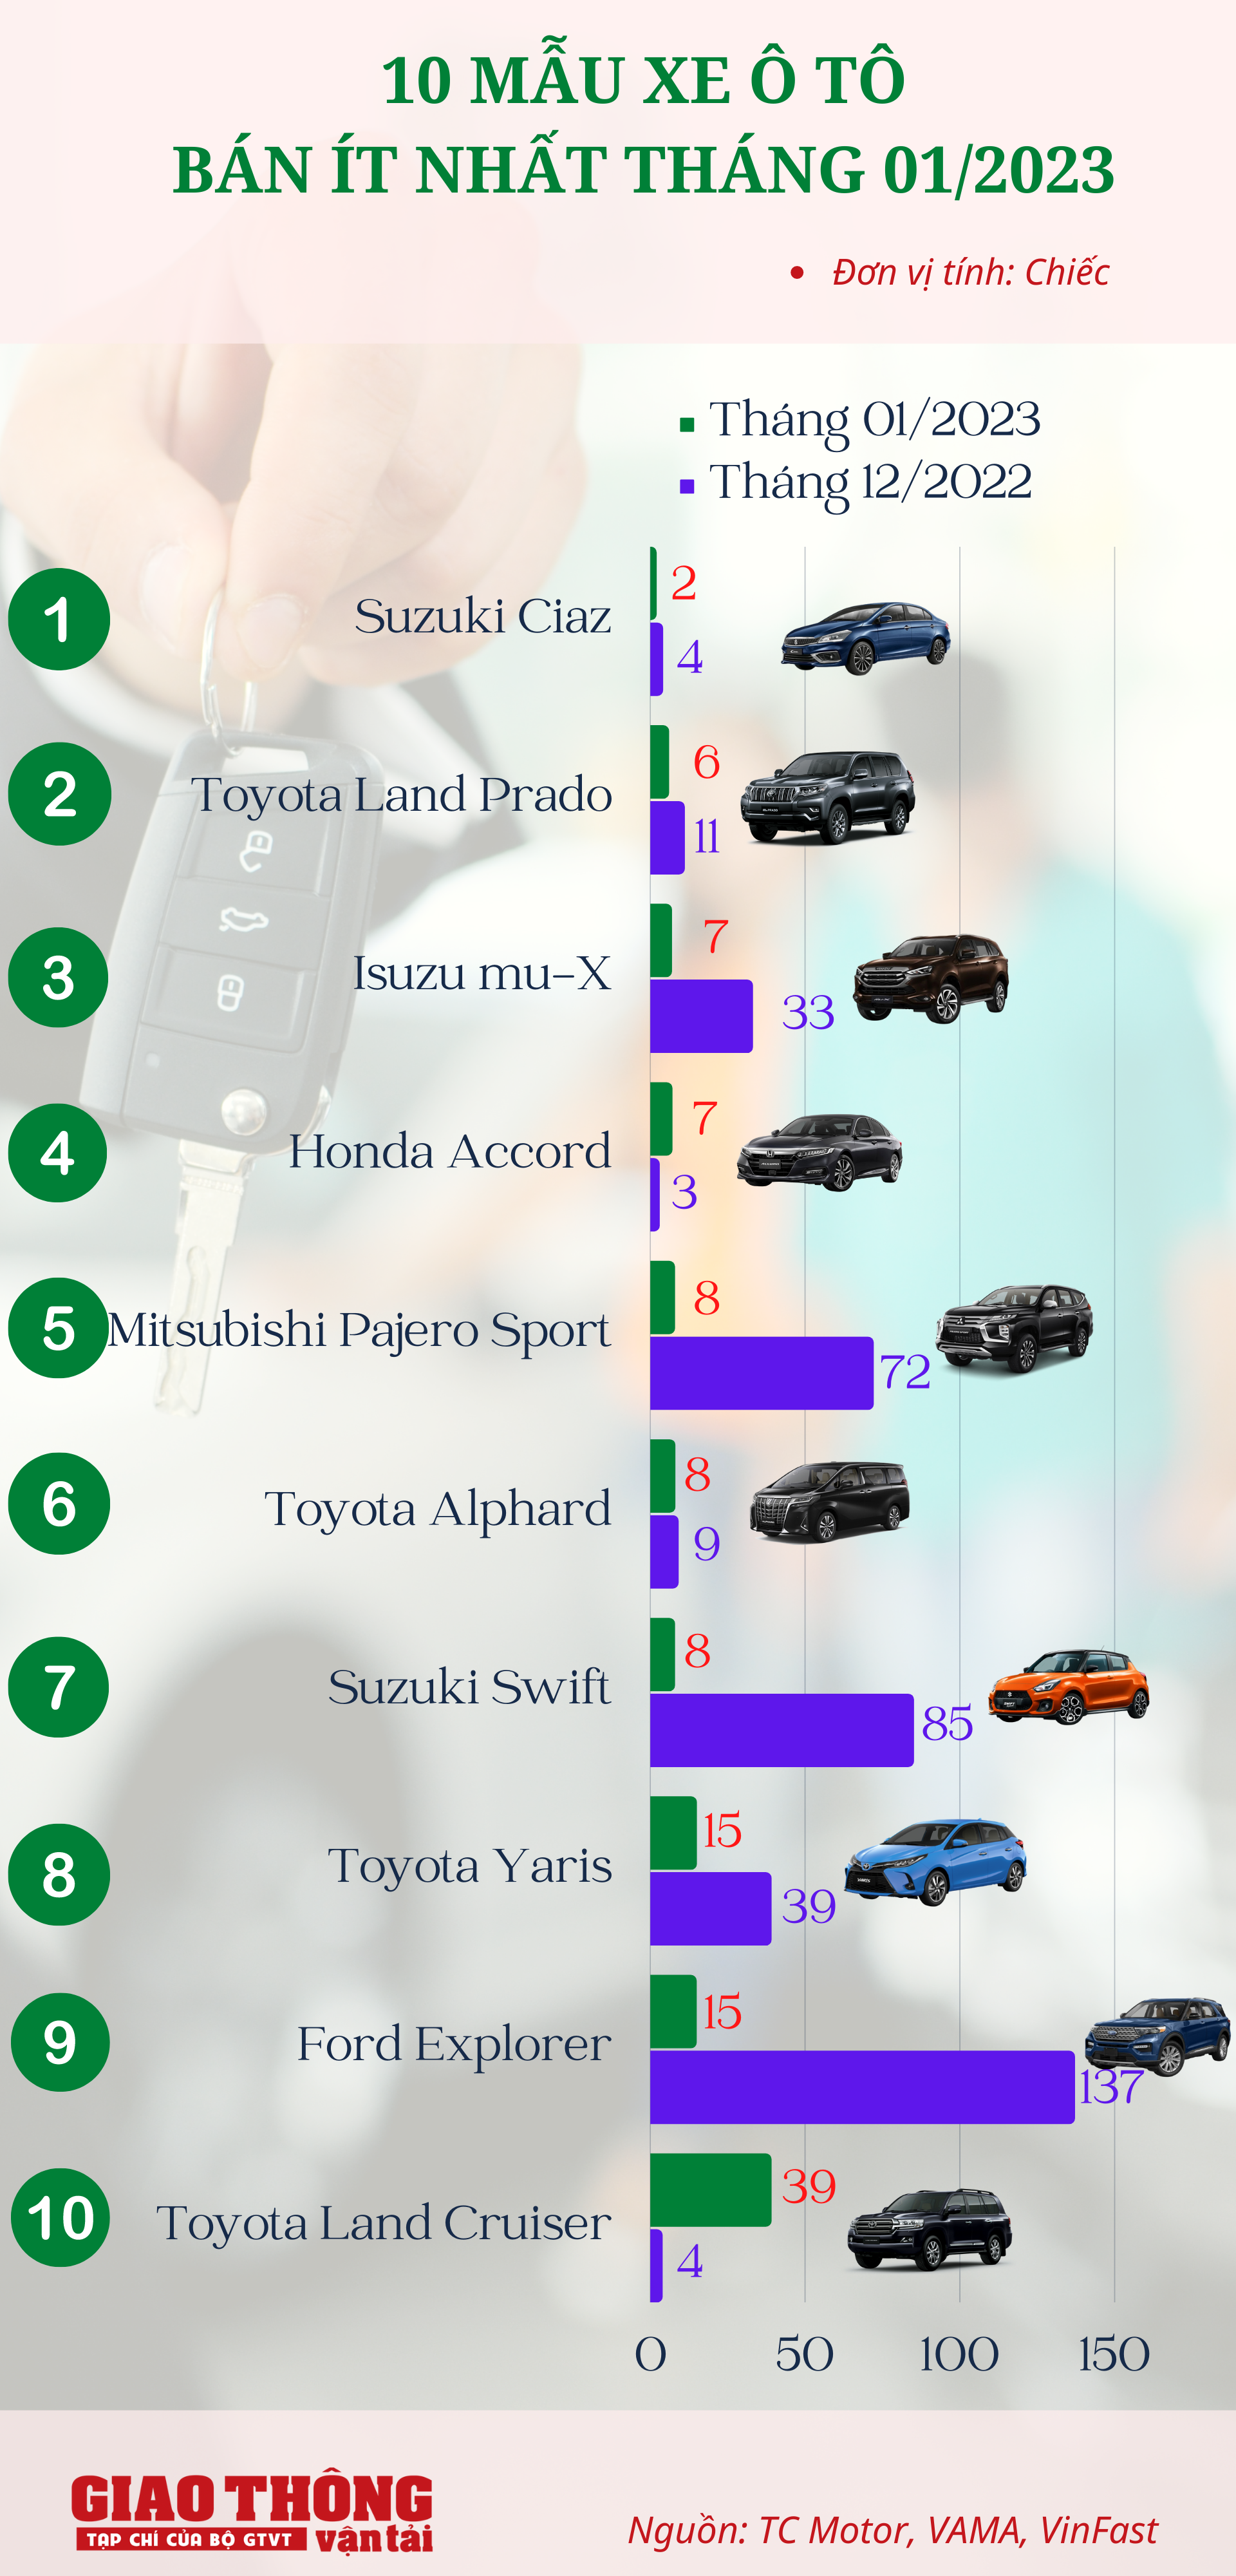 Toyota áp đảo Top 10 ô tô bán ít nhất tháng 1/2023 - Ảnh 1.